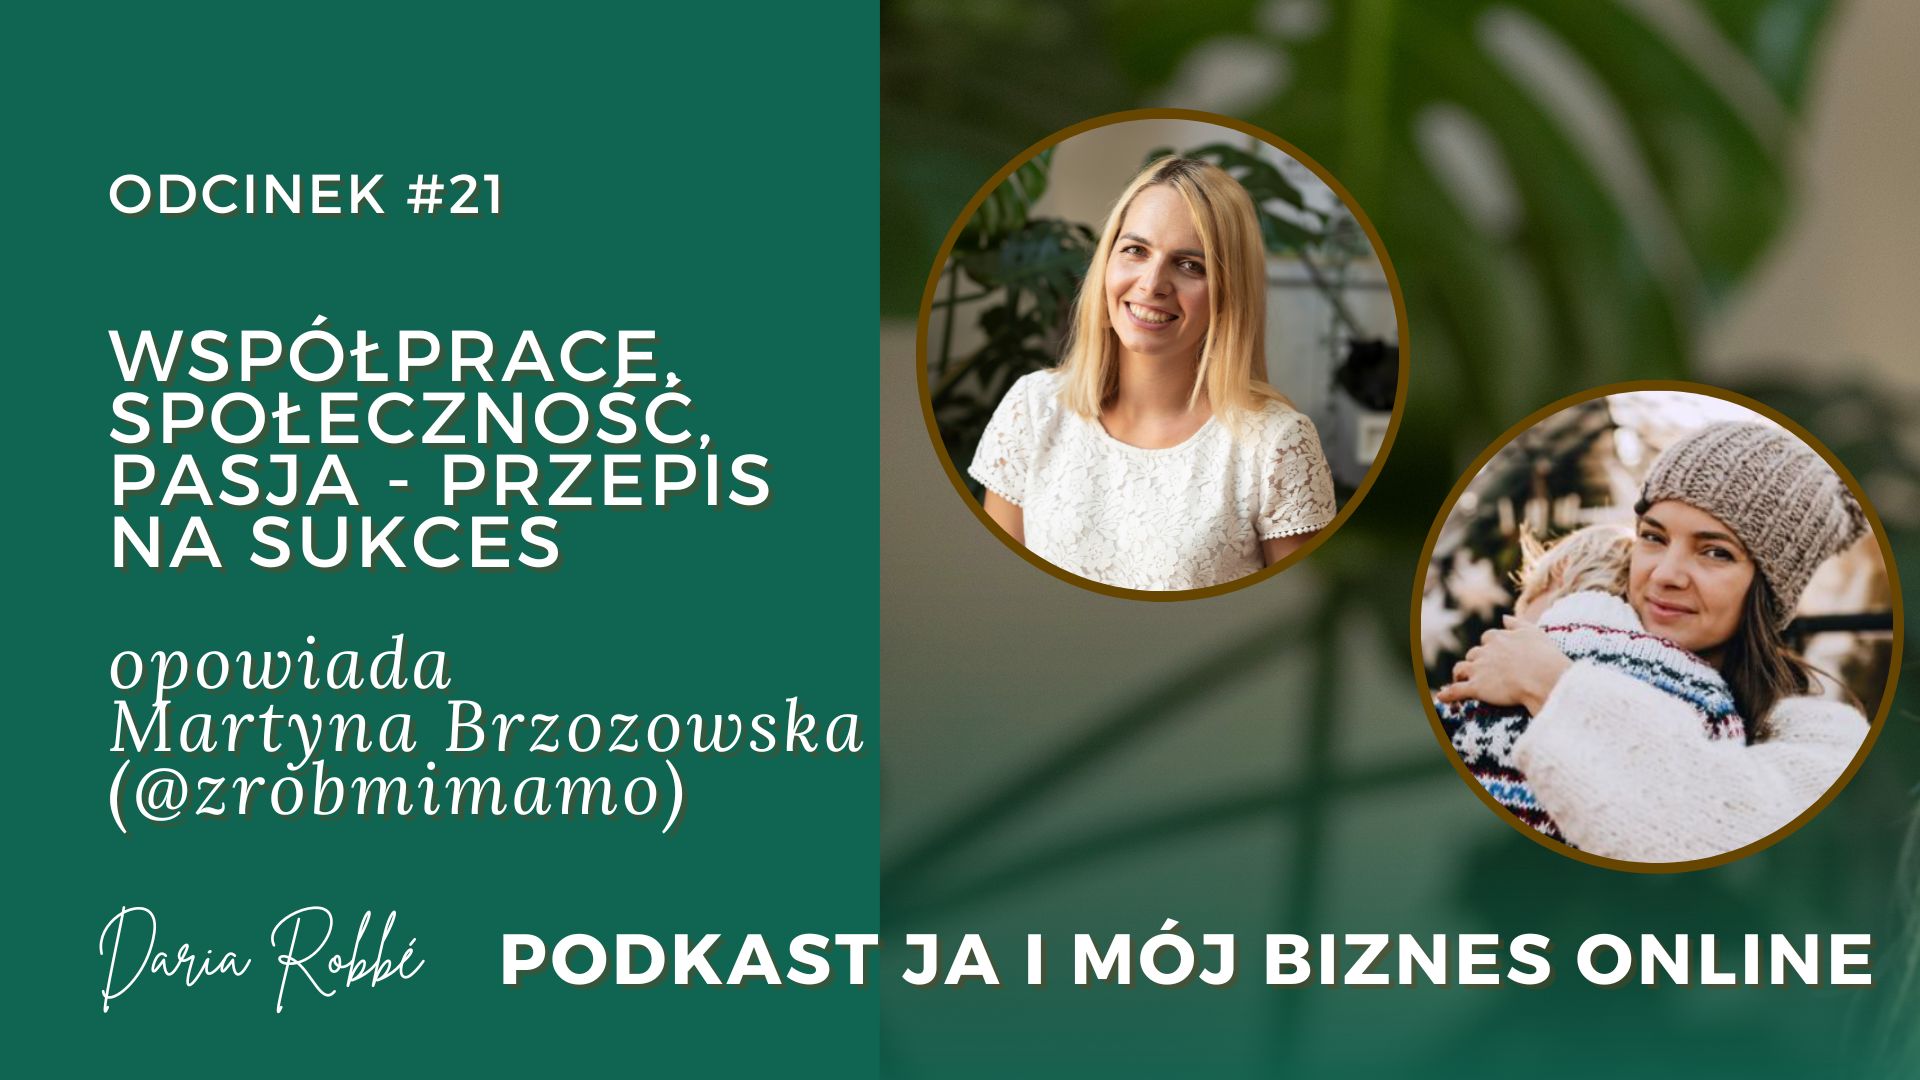 You are currently viewing #21 Współprace, społeczność, pasja – przepisem na sukces. Rozmowa z Martyną Brzozowską [Zrób mi mamo]